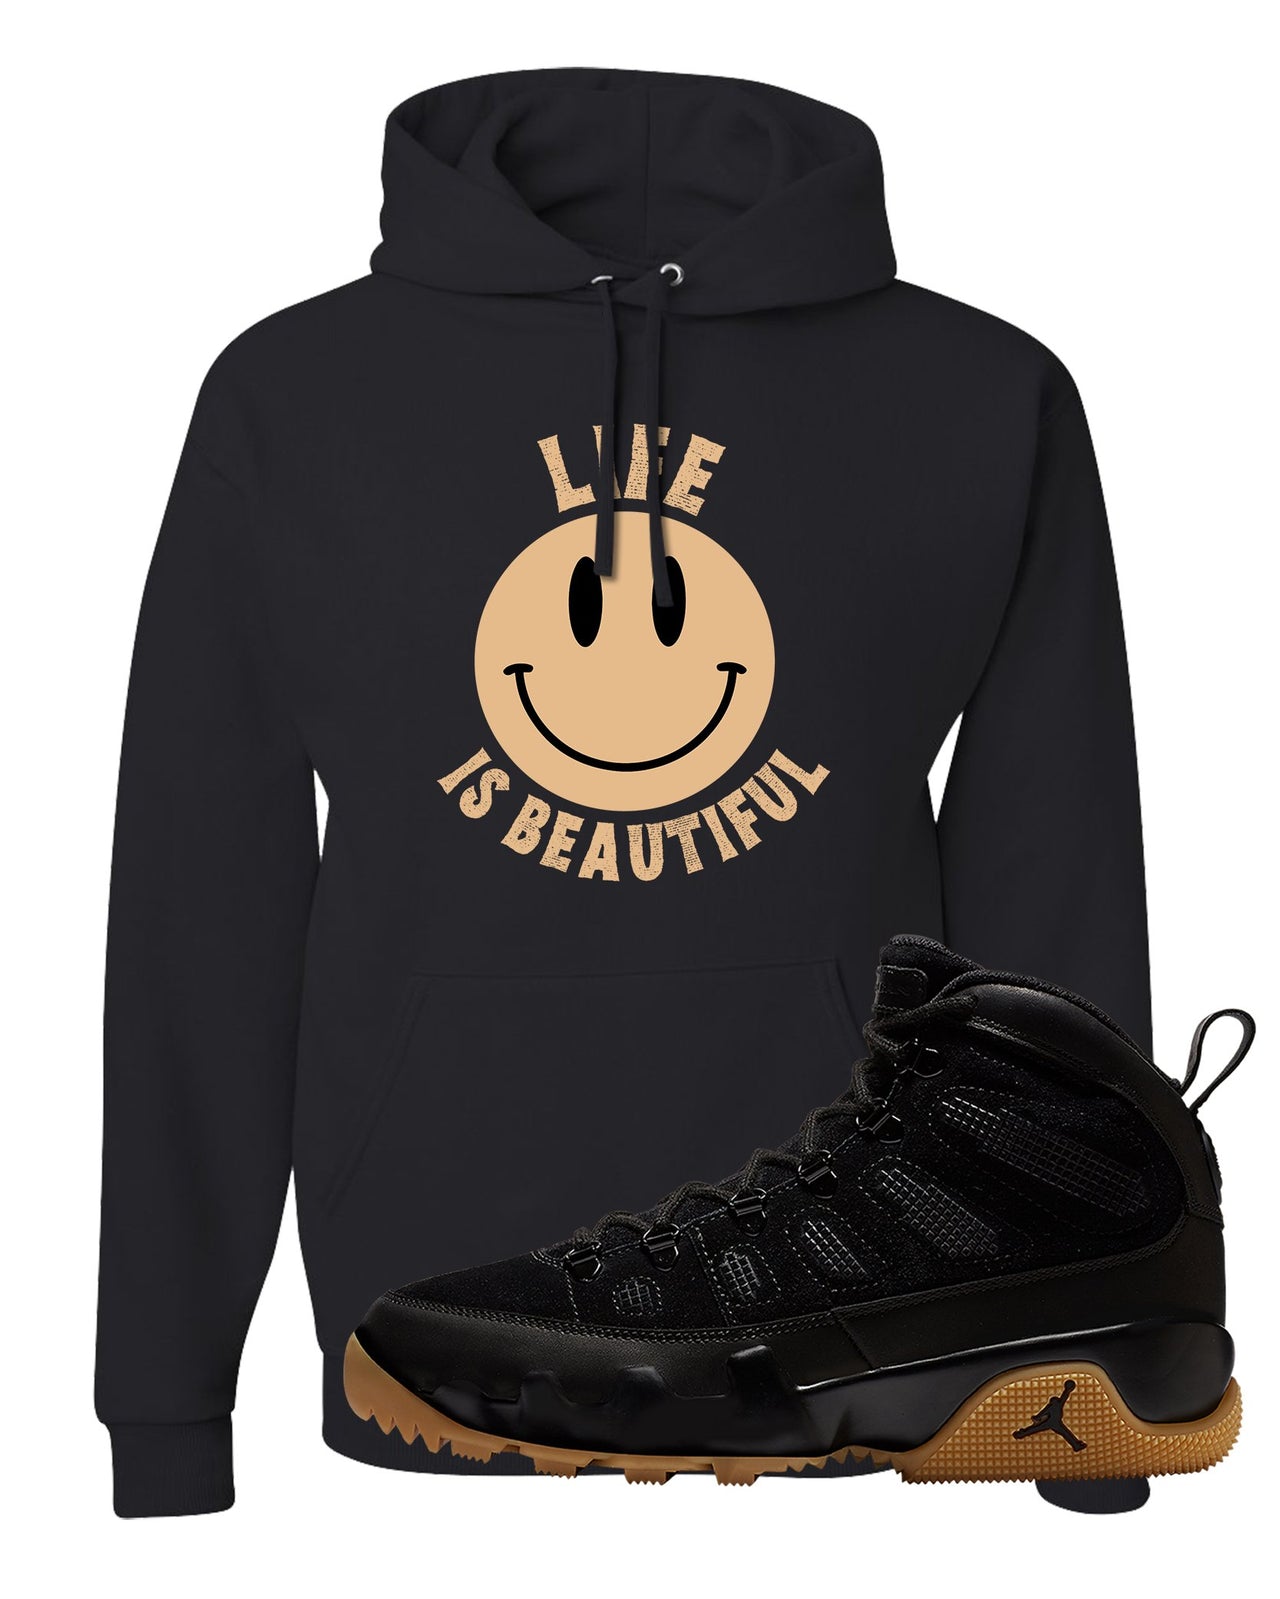 NRG Black Gum Boot 9s Hoodie | Smile Life Is Beautiful, Black